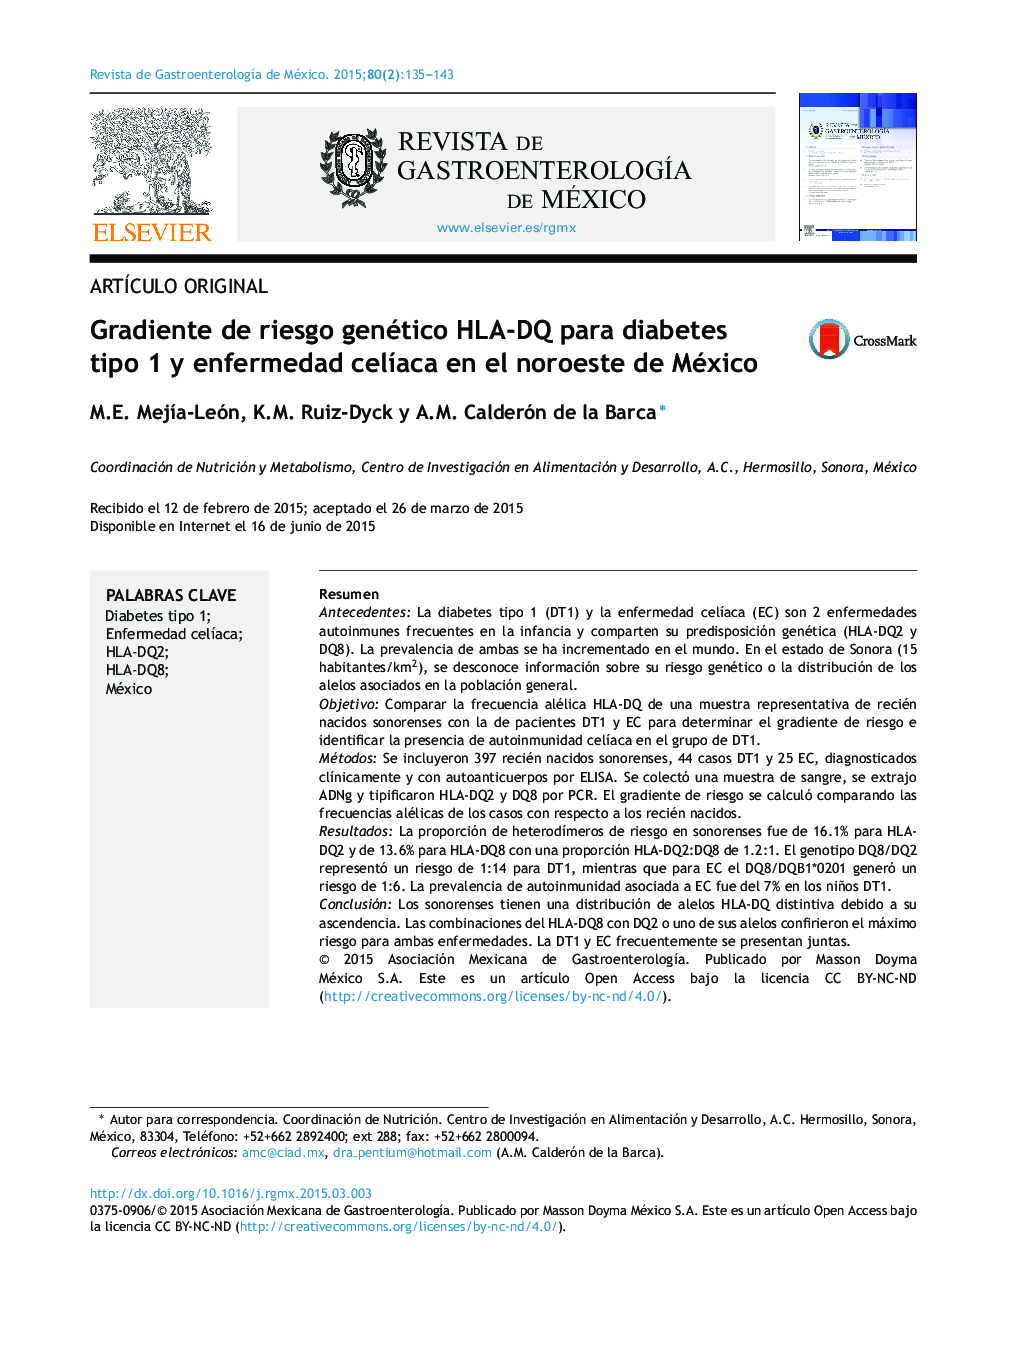 Gradiente de riesgo genético HLA-DQ para diabetes tipo 1 y enfermedad celíaca en el noroeste de México